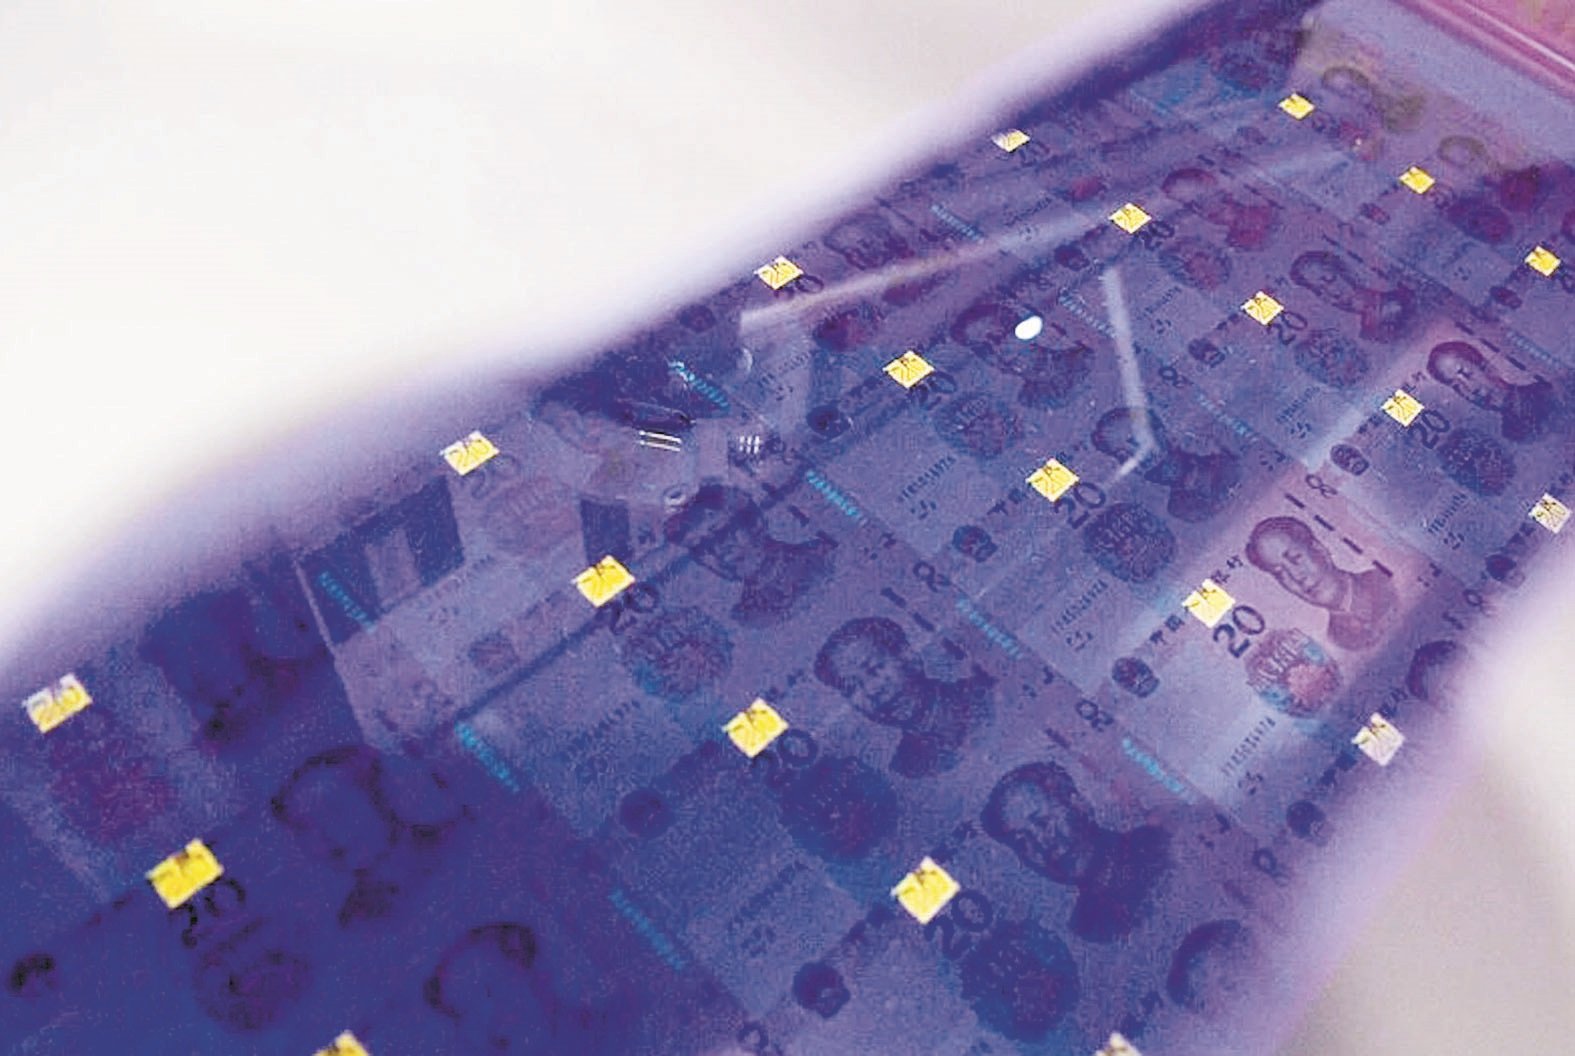 20元人民币新钞在紫外光下显现的萤光图案。面额数字颜色由金色变为绿色，并可见一条亮光带上下滚动。